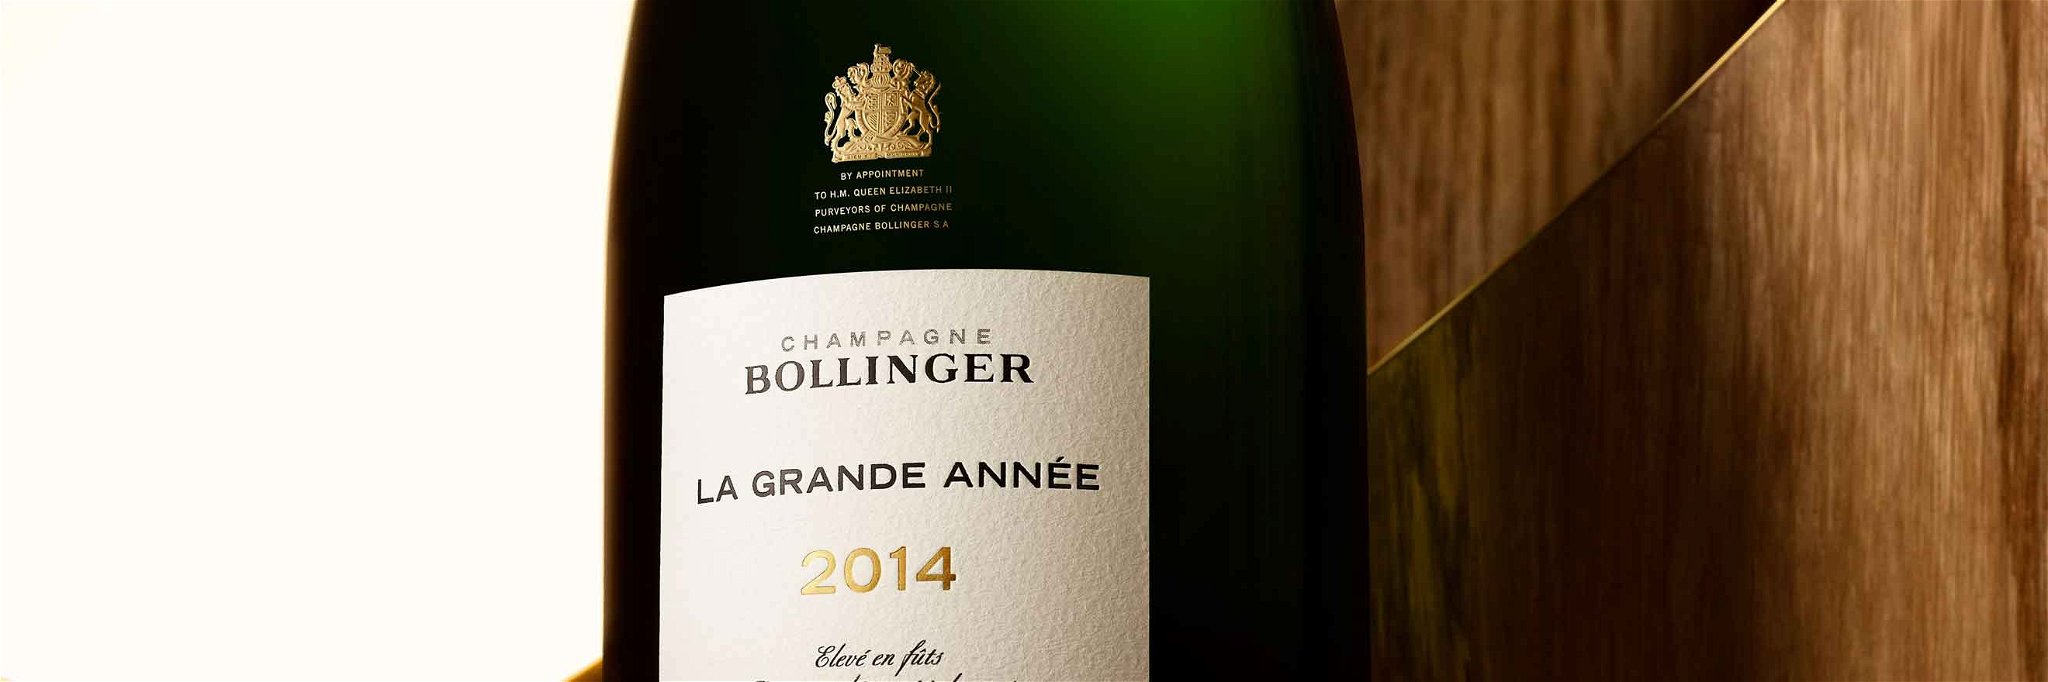 Champagne Bollinger Releases La Grande Année 2014